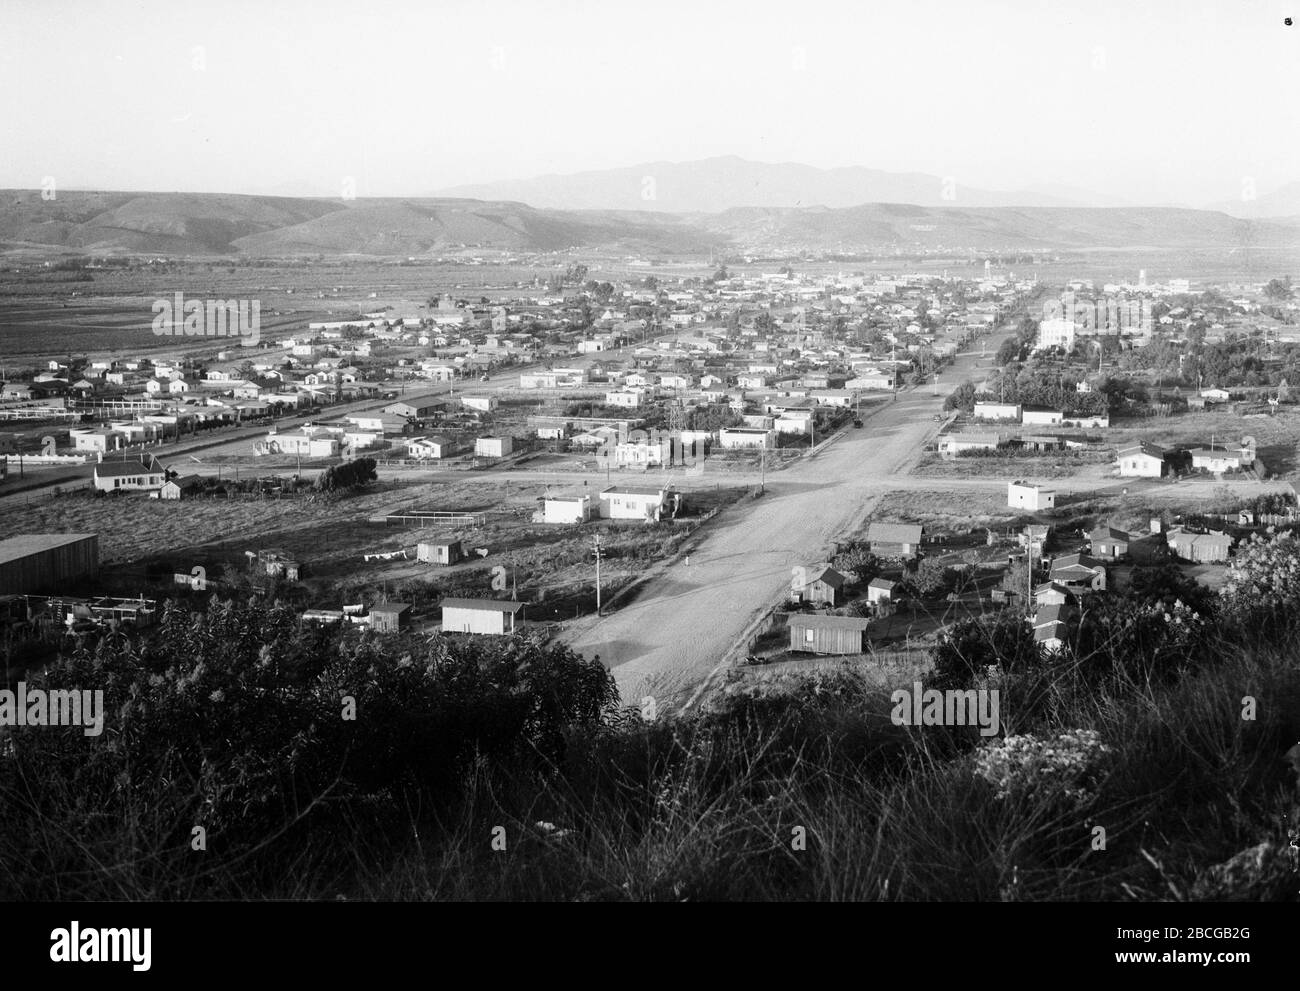 Vue panoramique sur la ville de Tijuana, Mexique, années 1920. Photographie par Burton Holmes. Banque D'Images